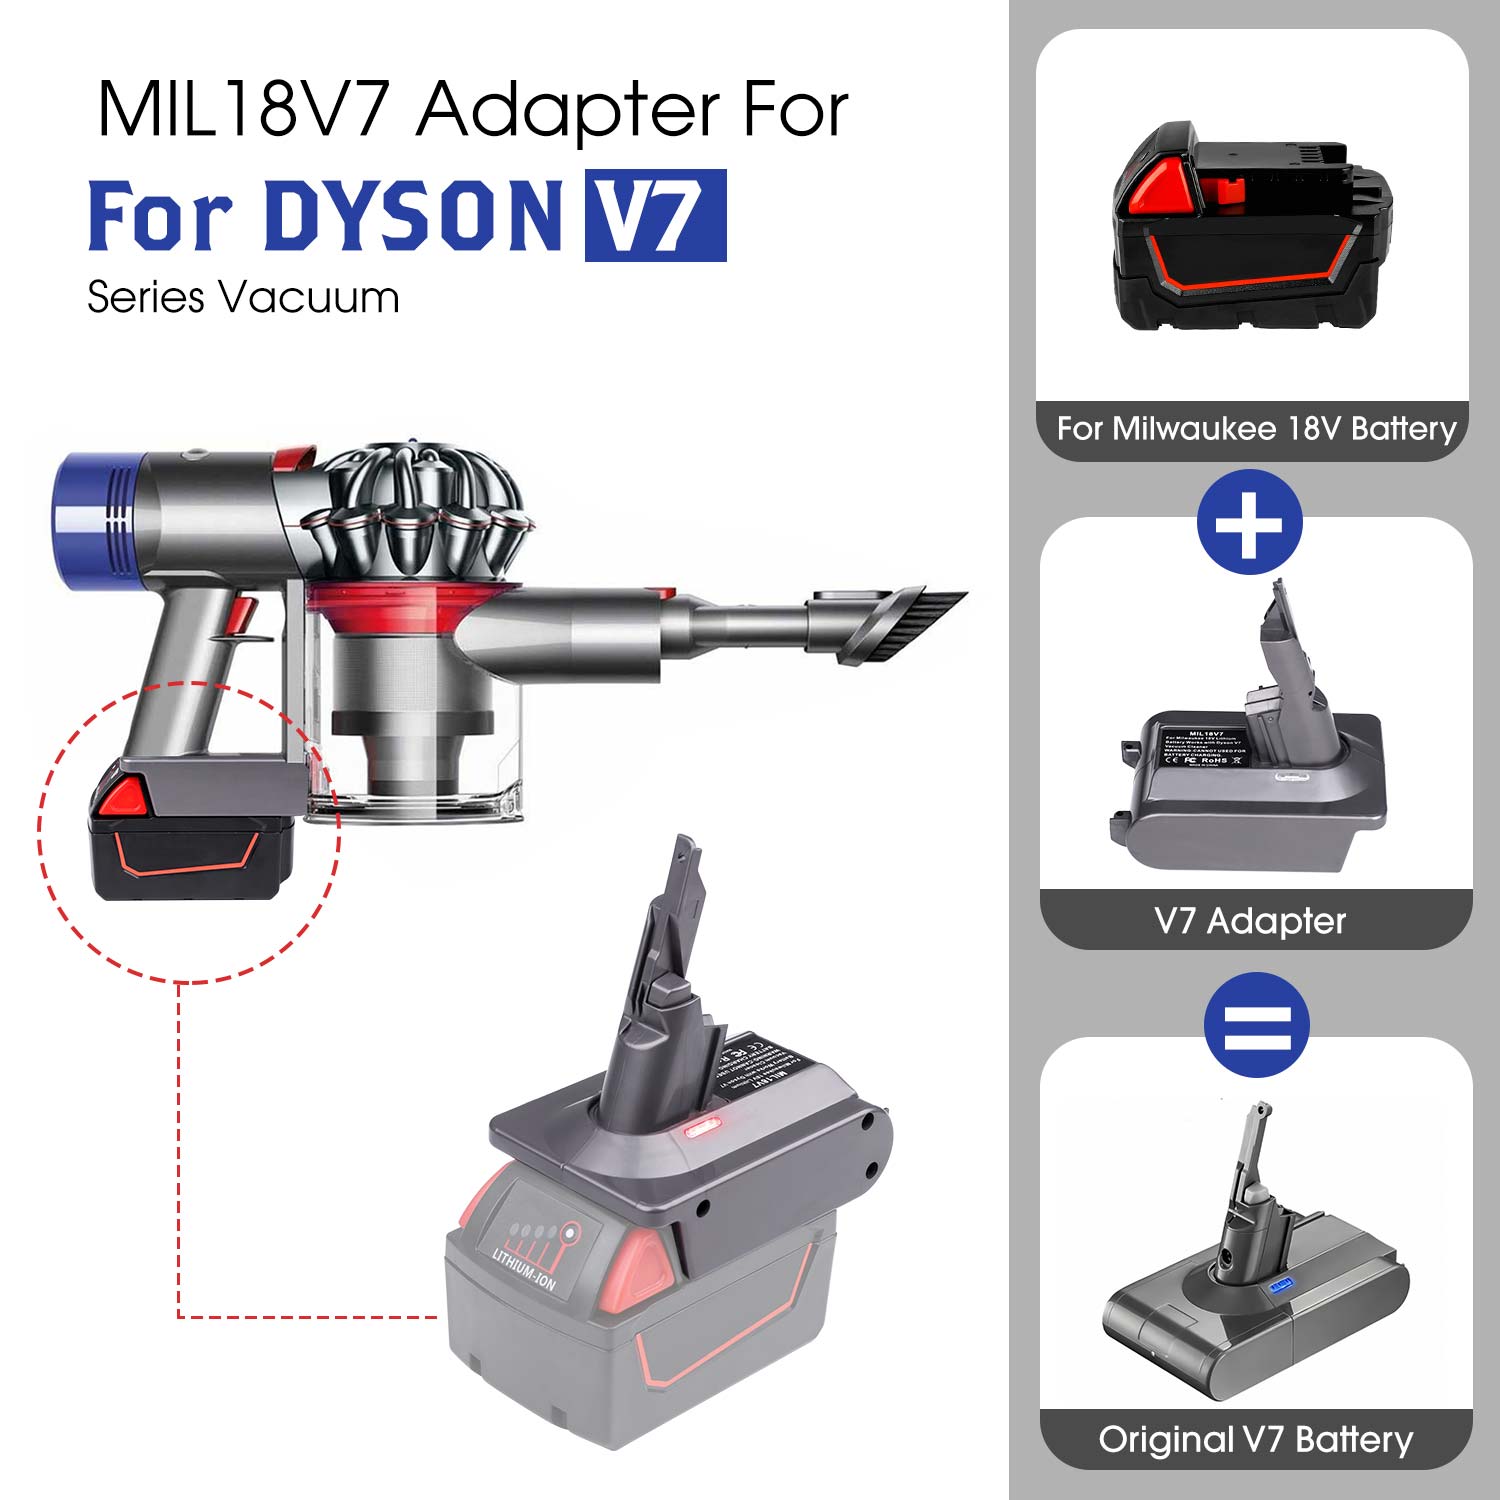 Für Dyson V7-Adapter für Milwaukee M18 18-V-Lithiumbatteriekonverter für Dyson V7, Verwendung für Dyson V7-Staubsauger